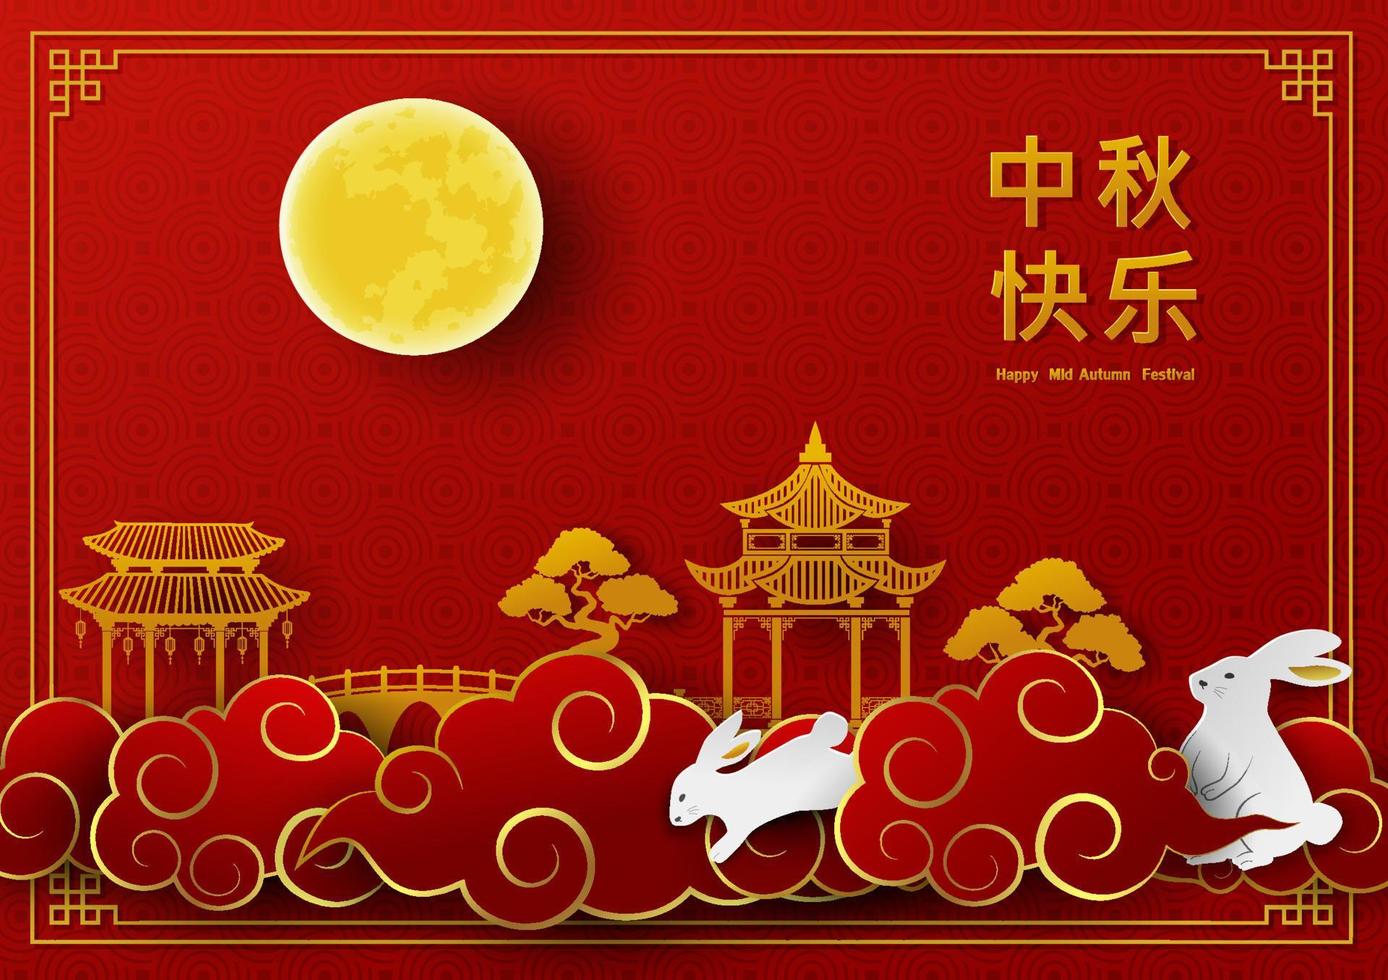 mitten höst festival eller måne festival, guld papper skära stil med full måne, kaniner, moln, paviljong och bro på röd bakgrund, kinesiska Översätt betyda mitten höst festival vektor